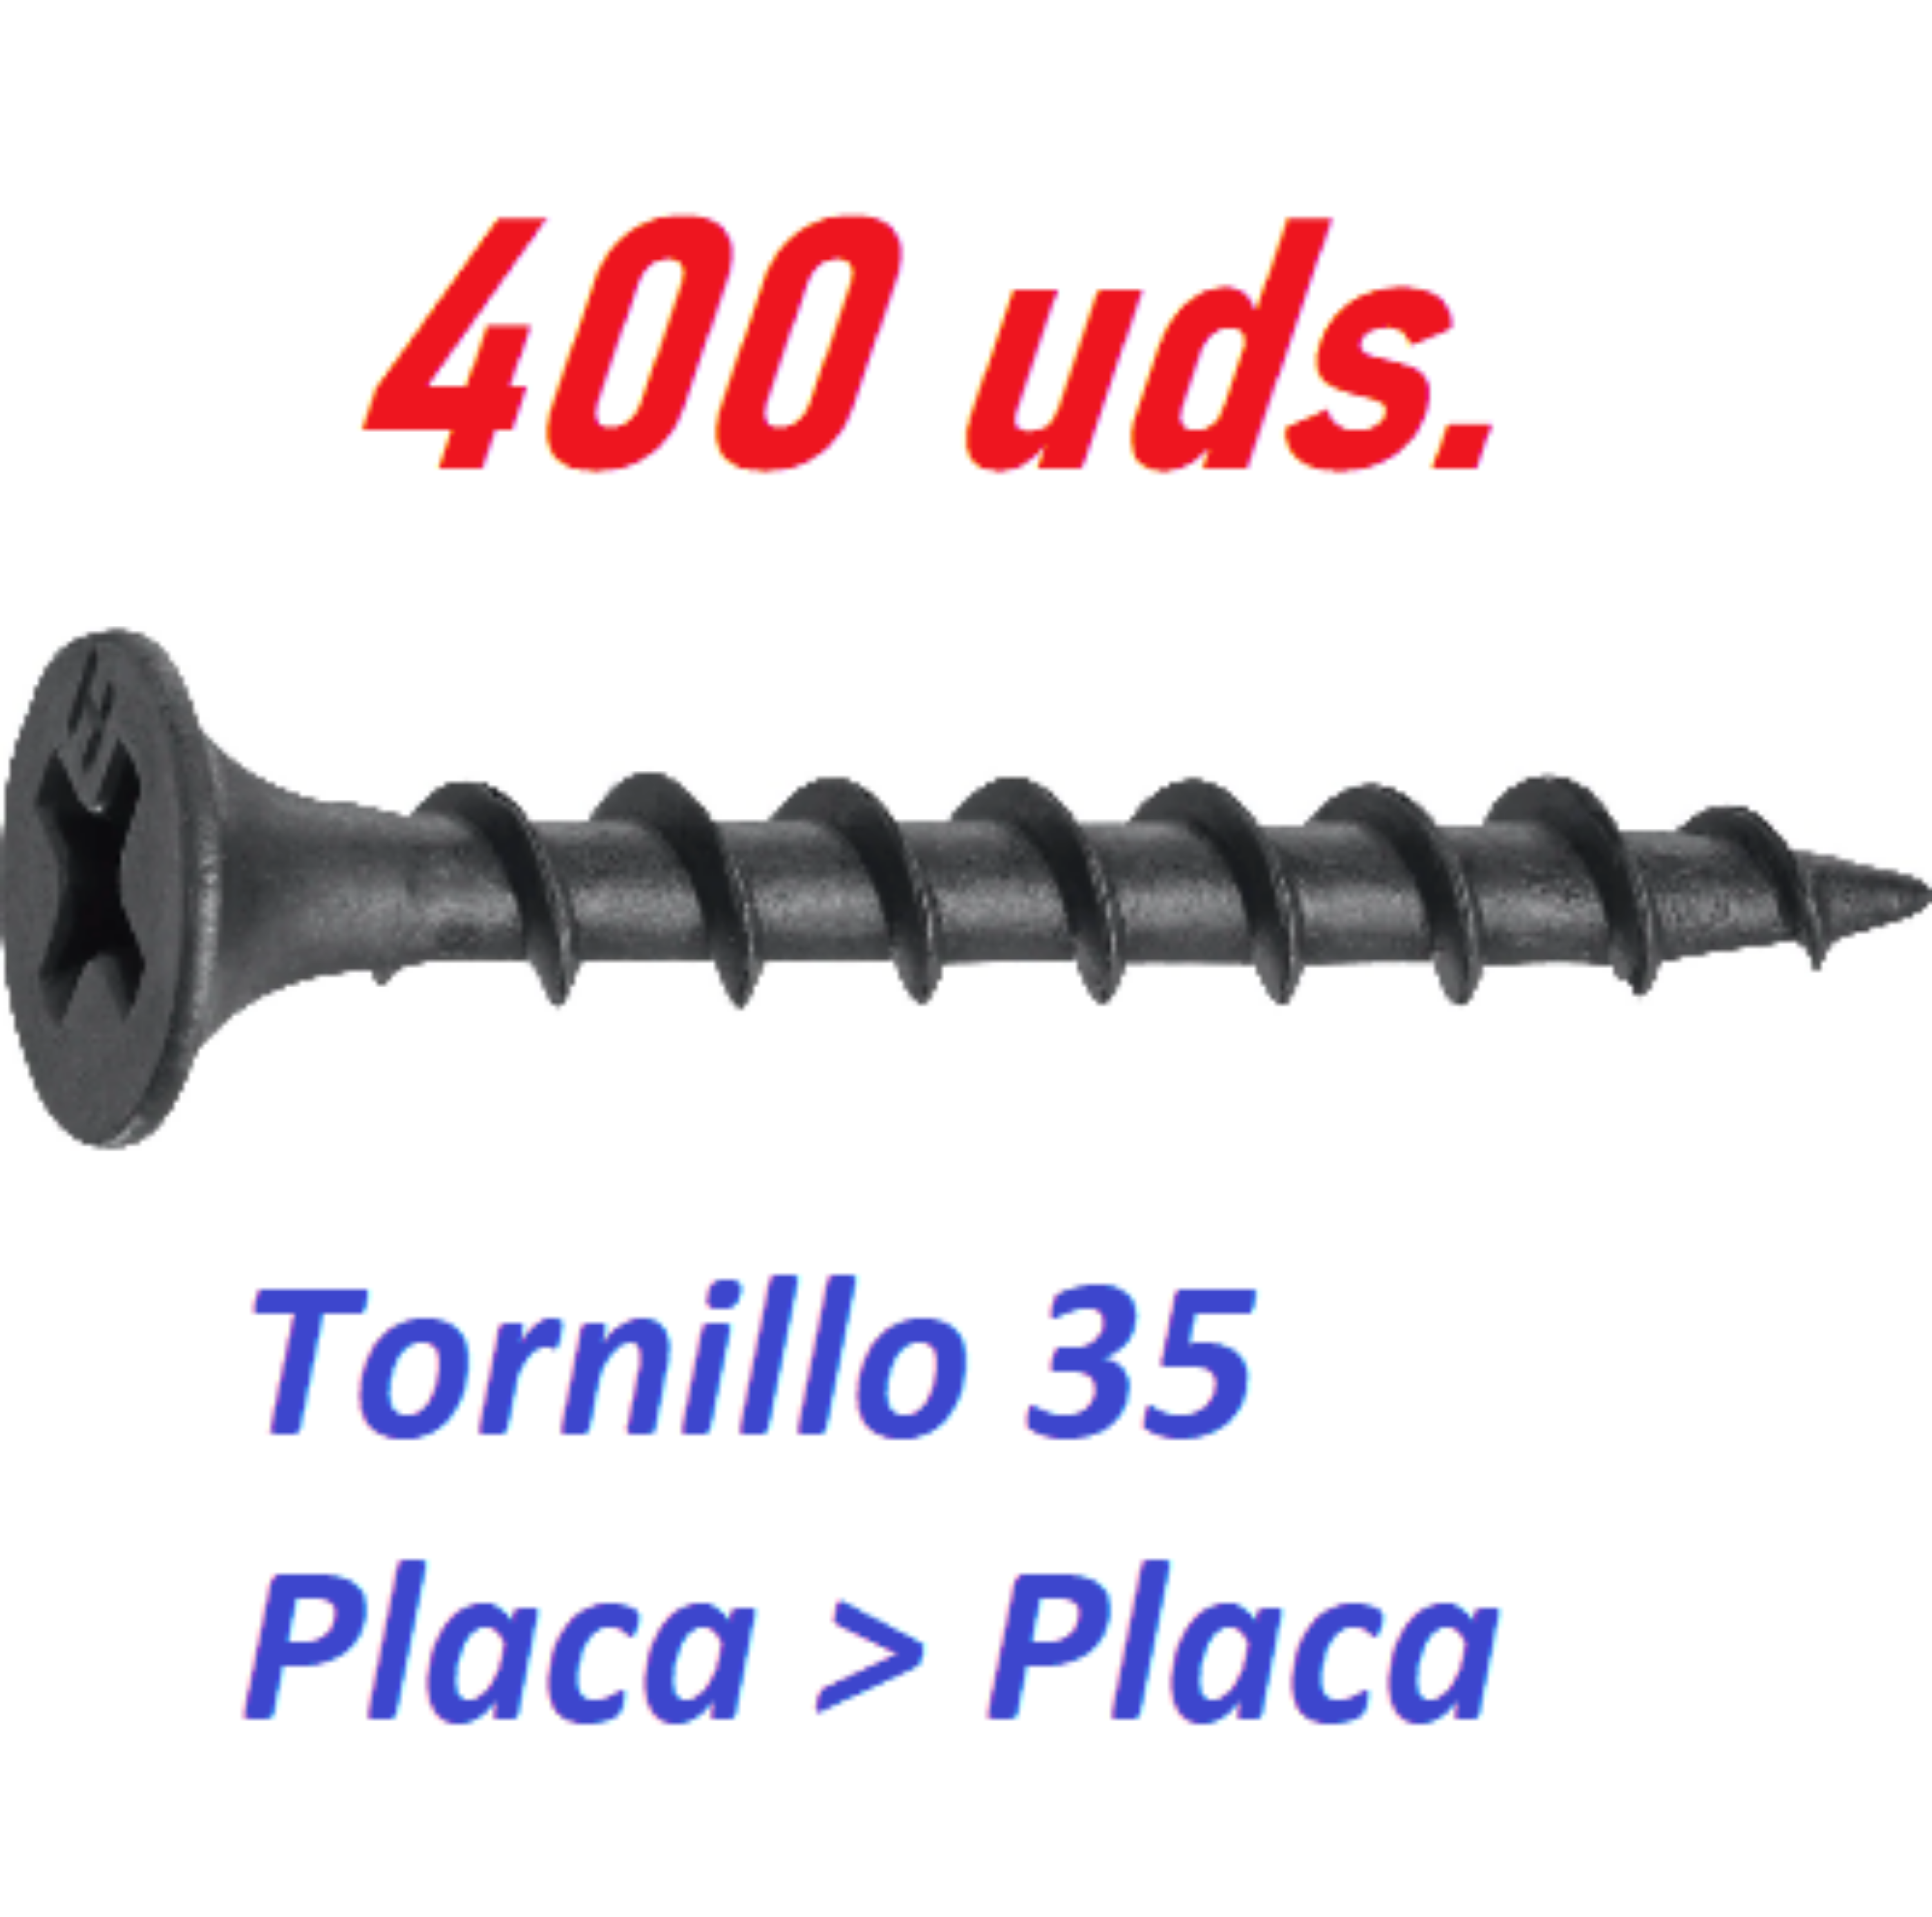 Imagen de 400 Tornillos de 5x35 PLACA > PLACA (400 uds).